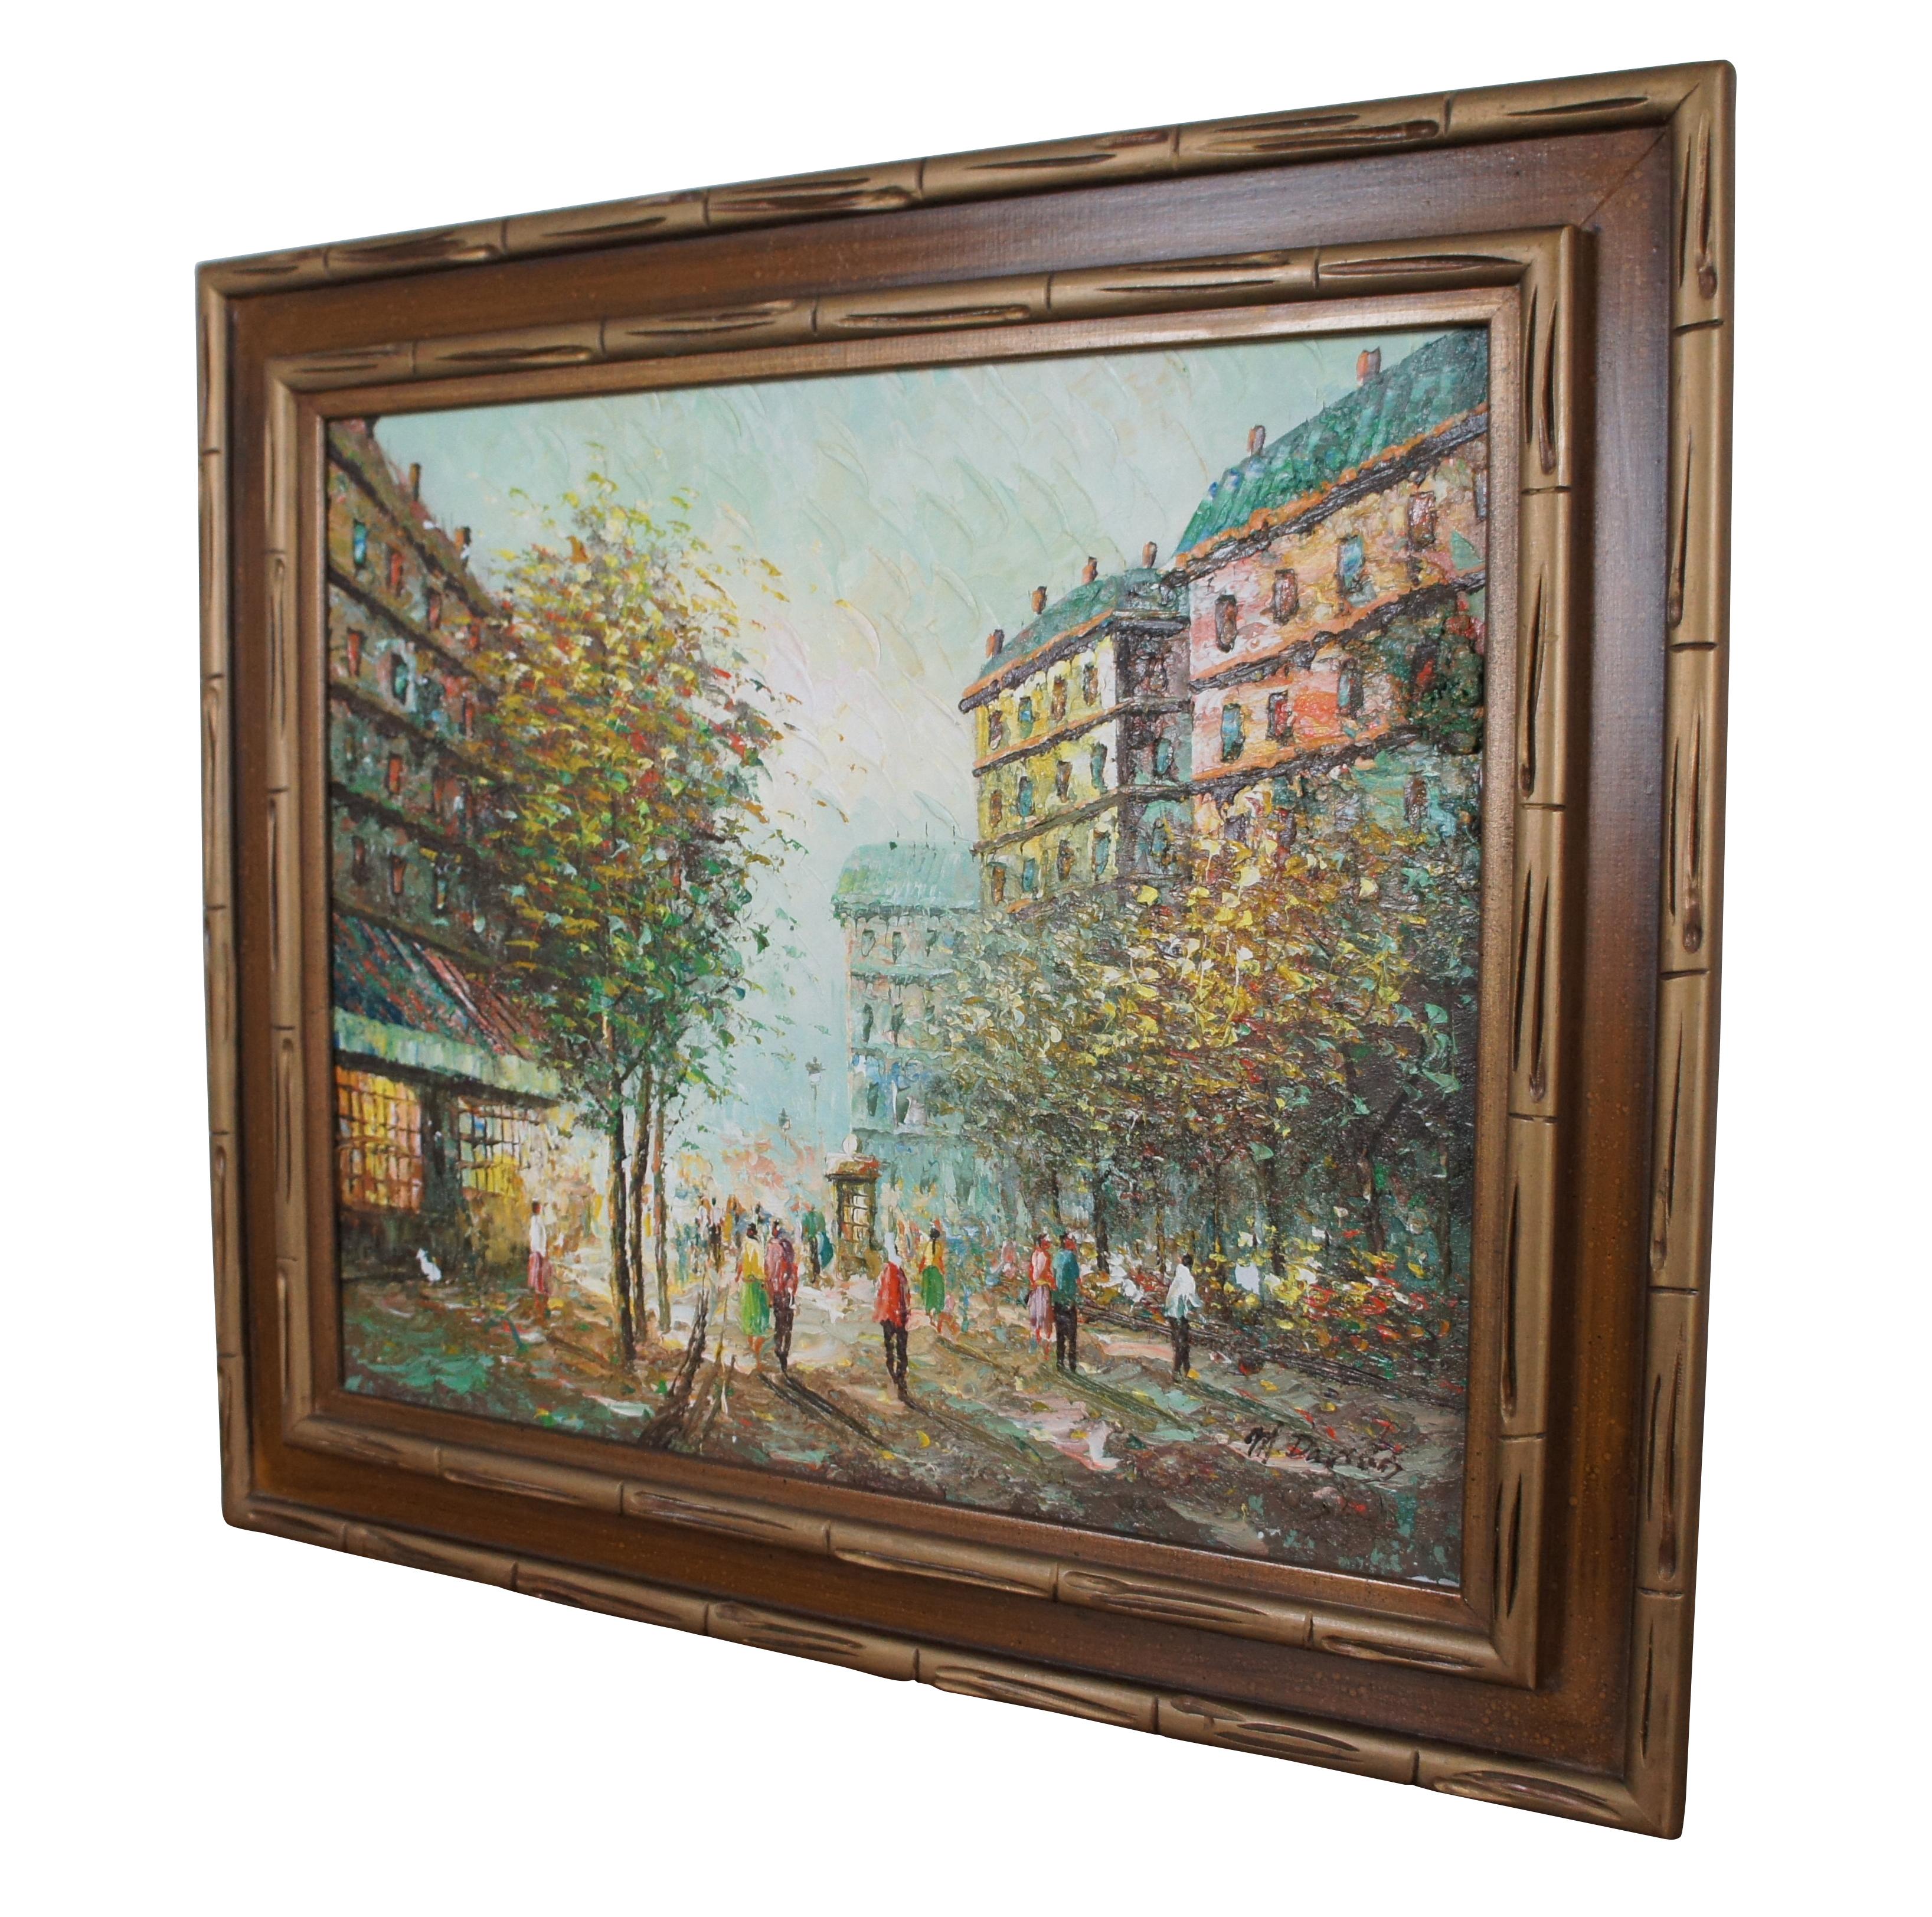 Tableau de paysage urbain parisien par M. A&M.  Une huile sur toile dans les rues de Paris.  Magnifiquement peinte avec des couleurs exceptionnelles.  Signé à la main en bas à droite.

Dimensions :
30,75